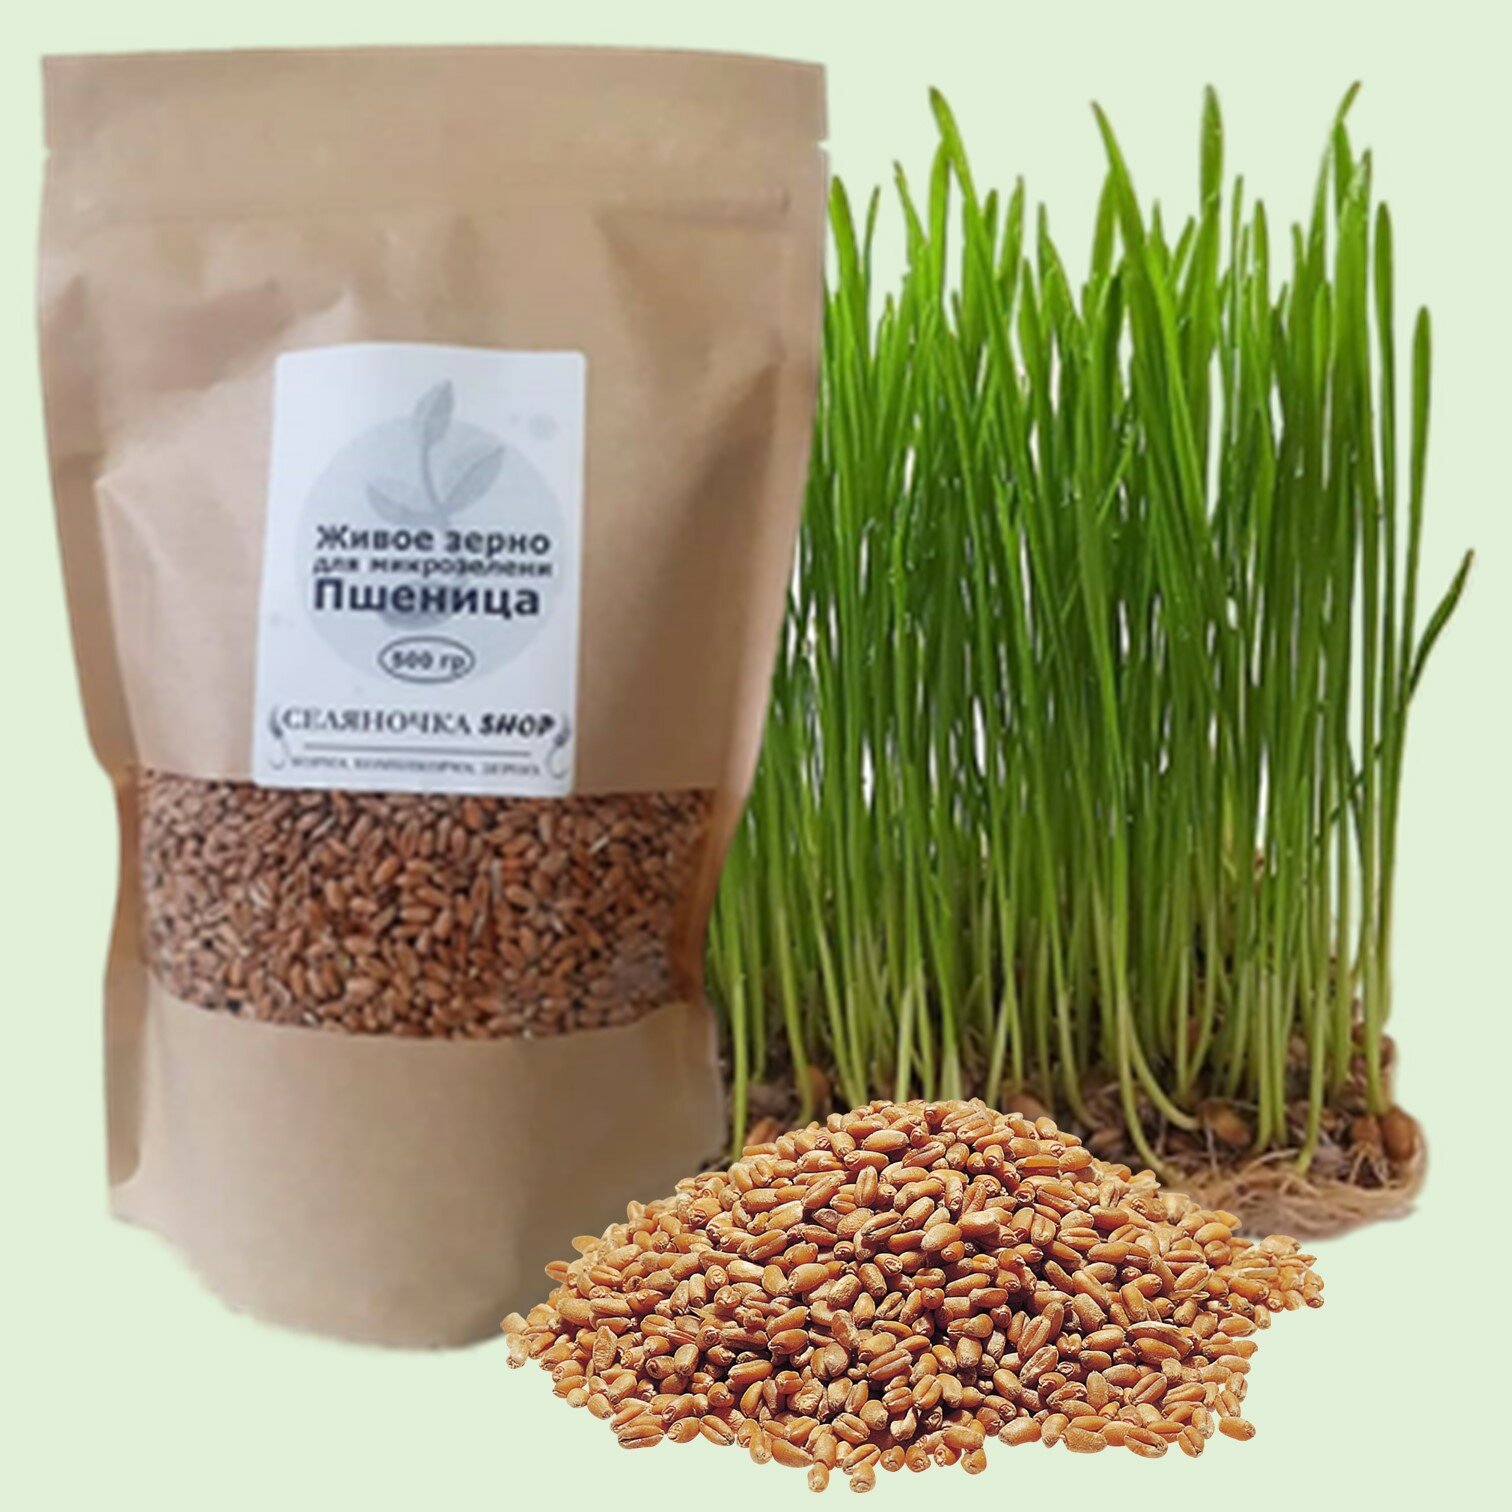 Набор семян для микрозелени "Живое зерно" 4 шт: Пшеница 500 гр, Овёс 300 гр, Семечка 300 гр, Горох 500 гр